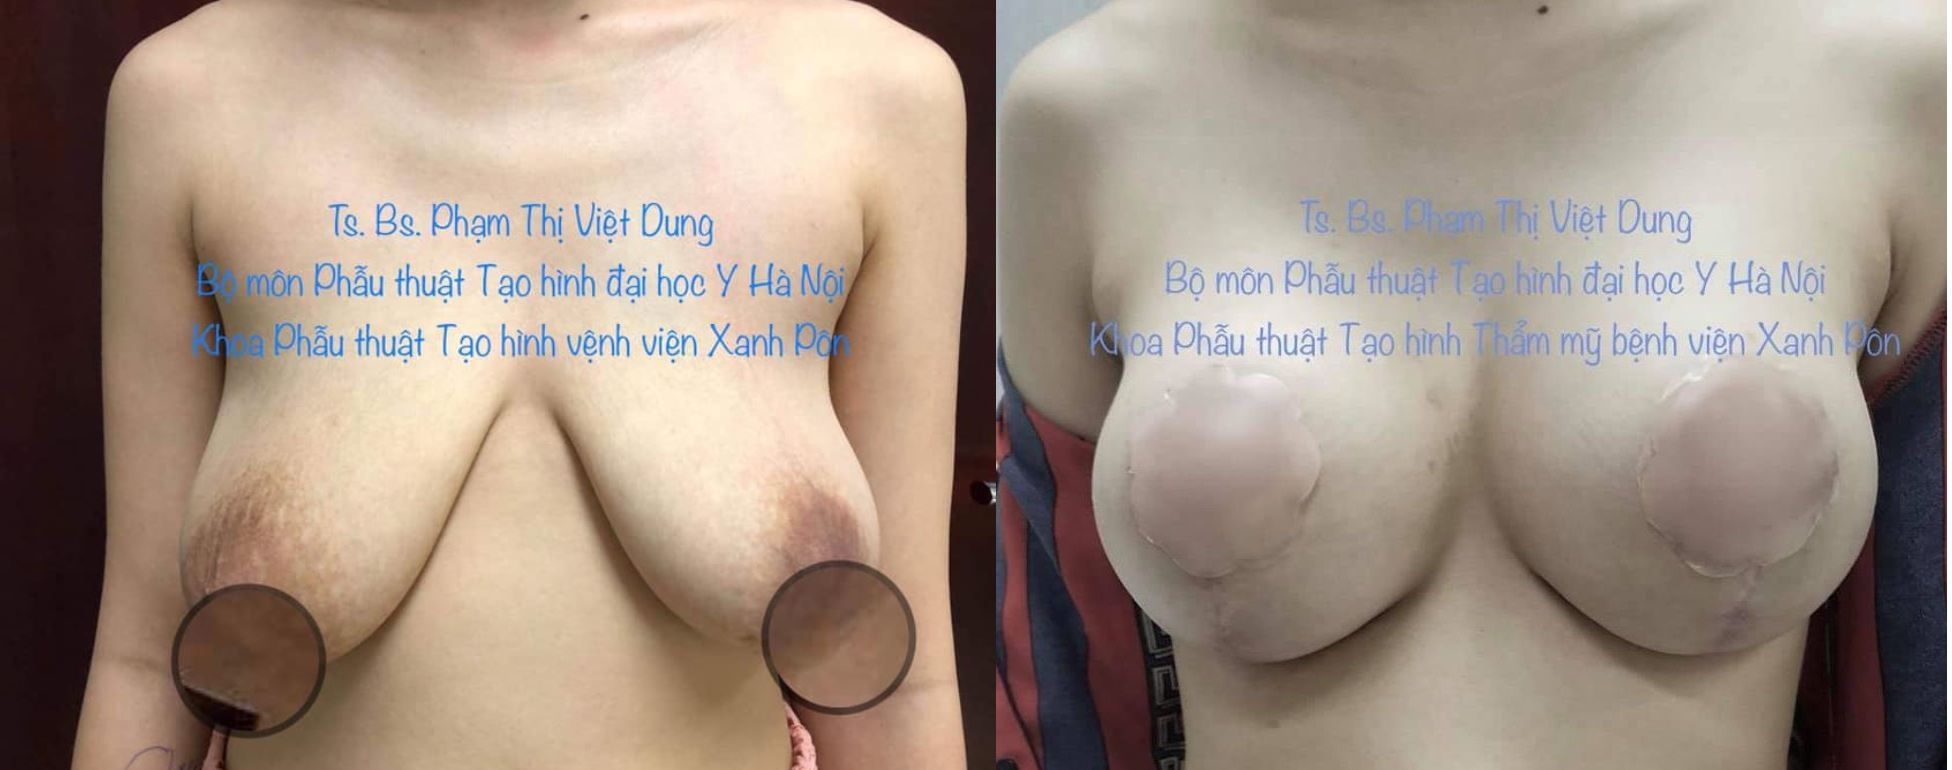 Treo ngực sa trễ - Bs Phạm Thị Việt Dung ca 5